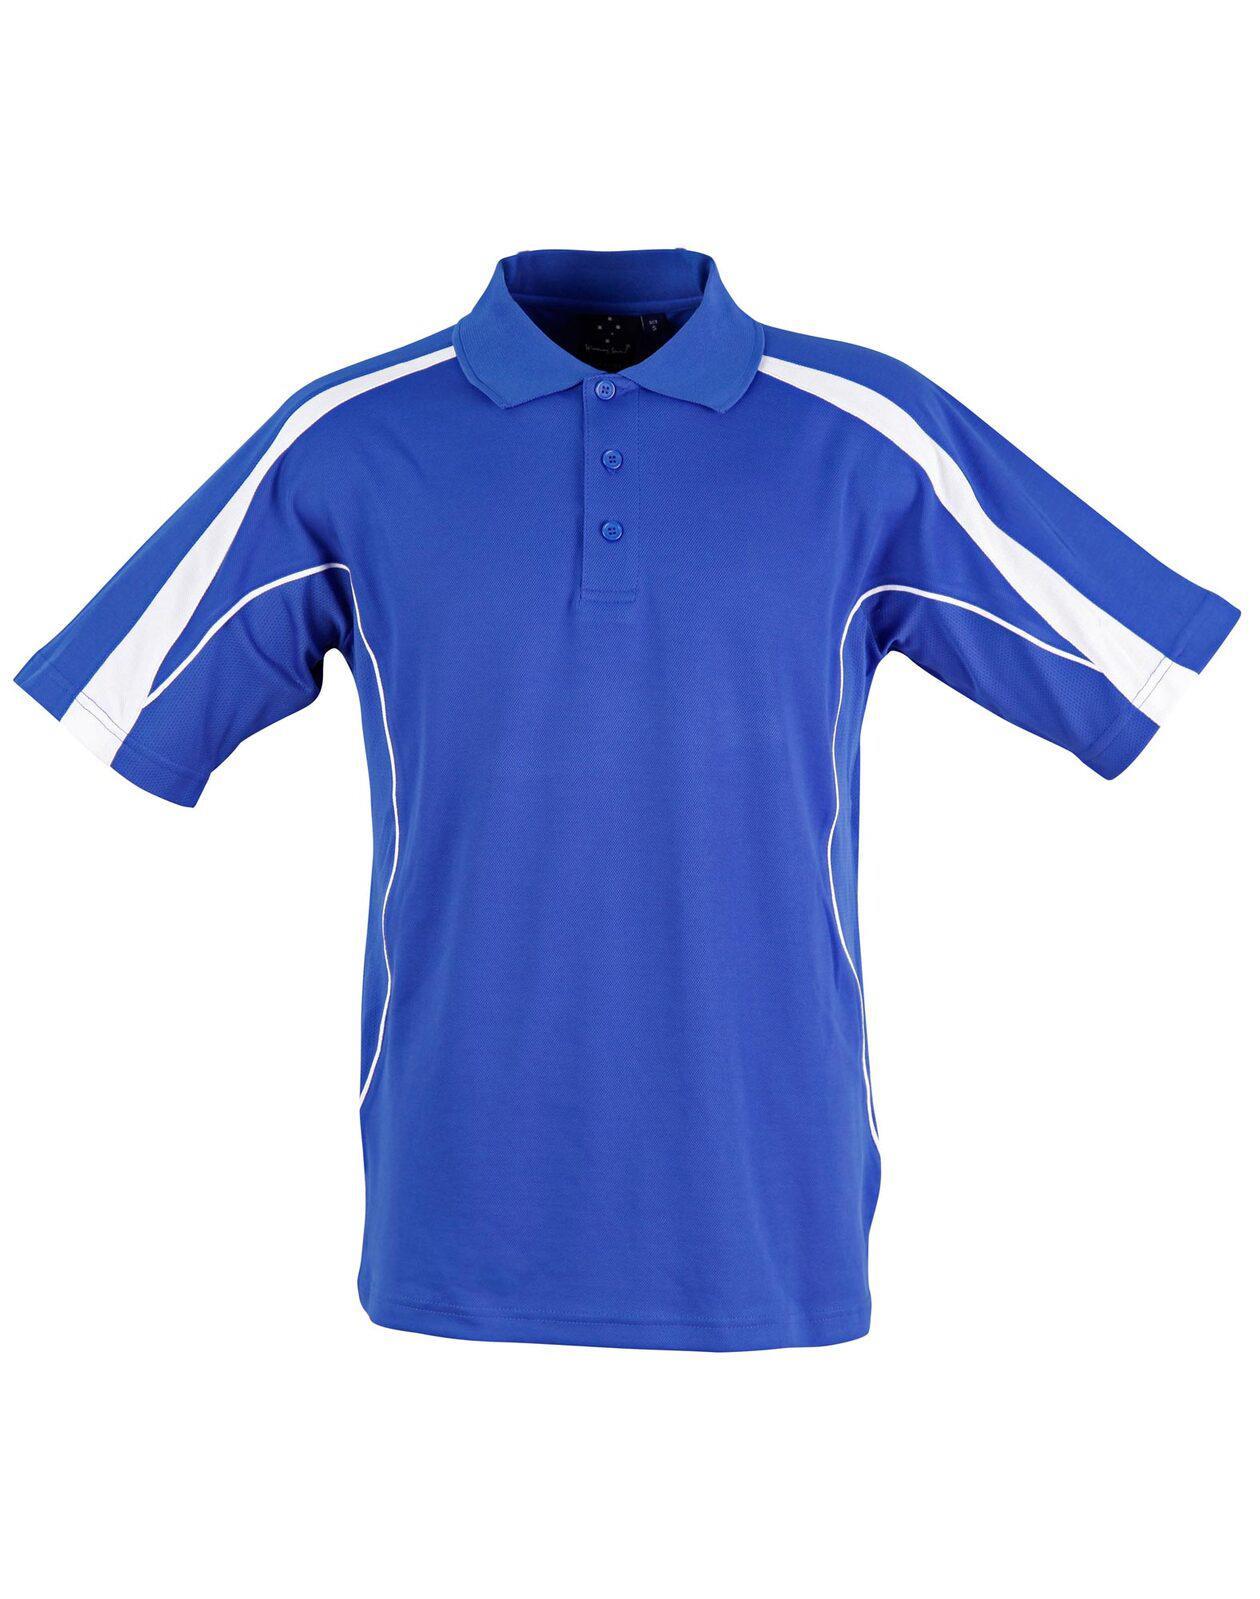 PS53K Sz 04K LEGEND Polyester Cotton Kid's Polo Shirt Royal Blue/White